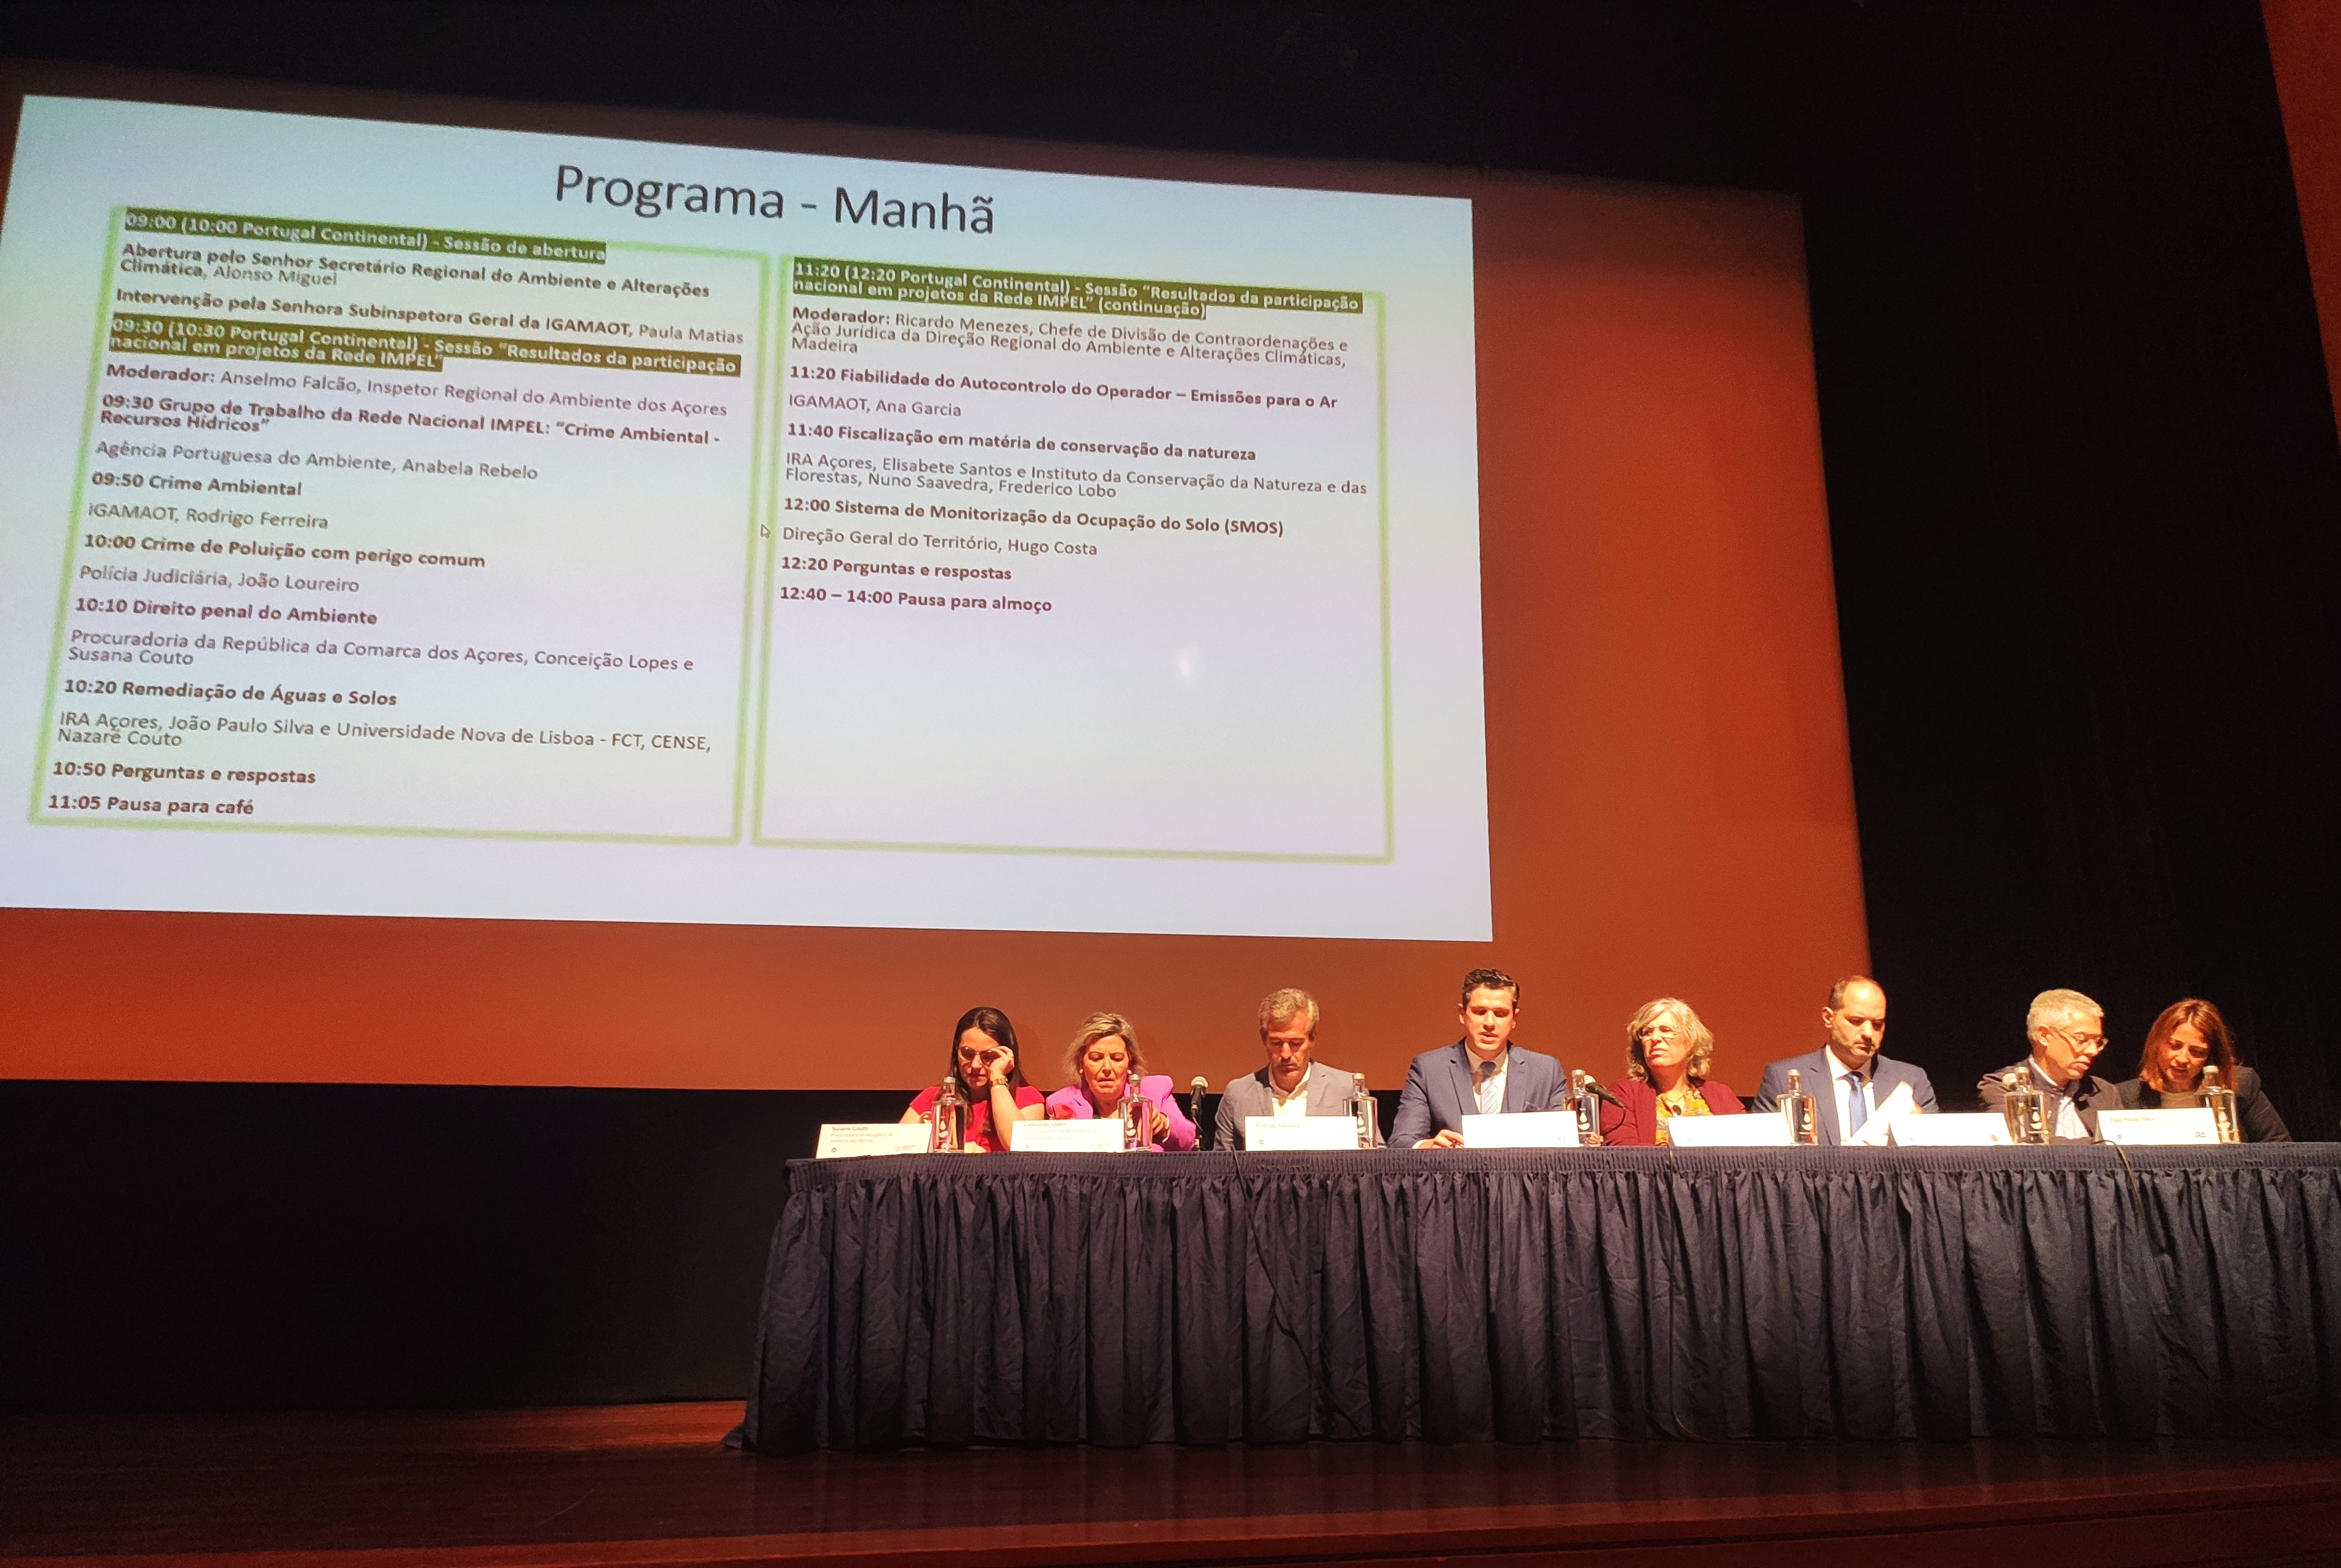 8ª Reunião Estratégica da Rede Nacional IMPEL e Conferência da Rede Nacional IMPEL 2023 – Açores, Ilha Terceira - 4 e 5 de maio 